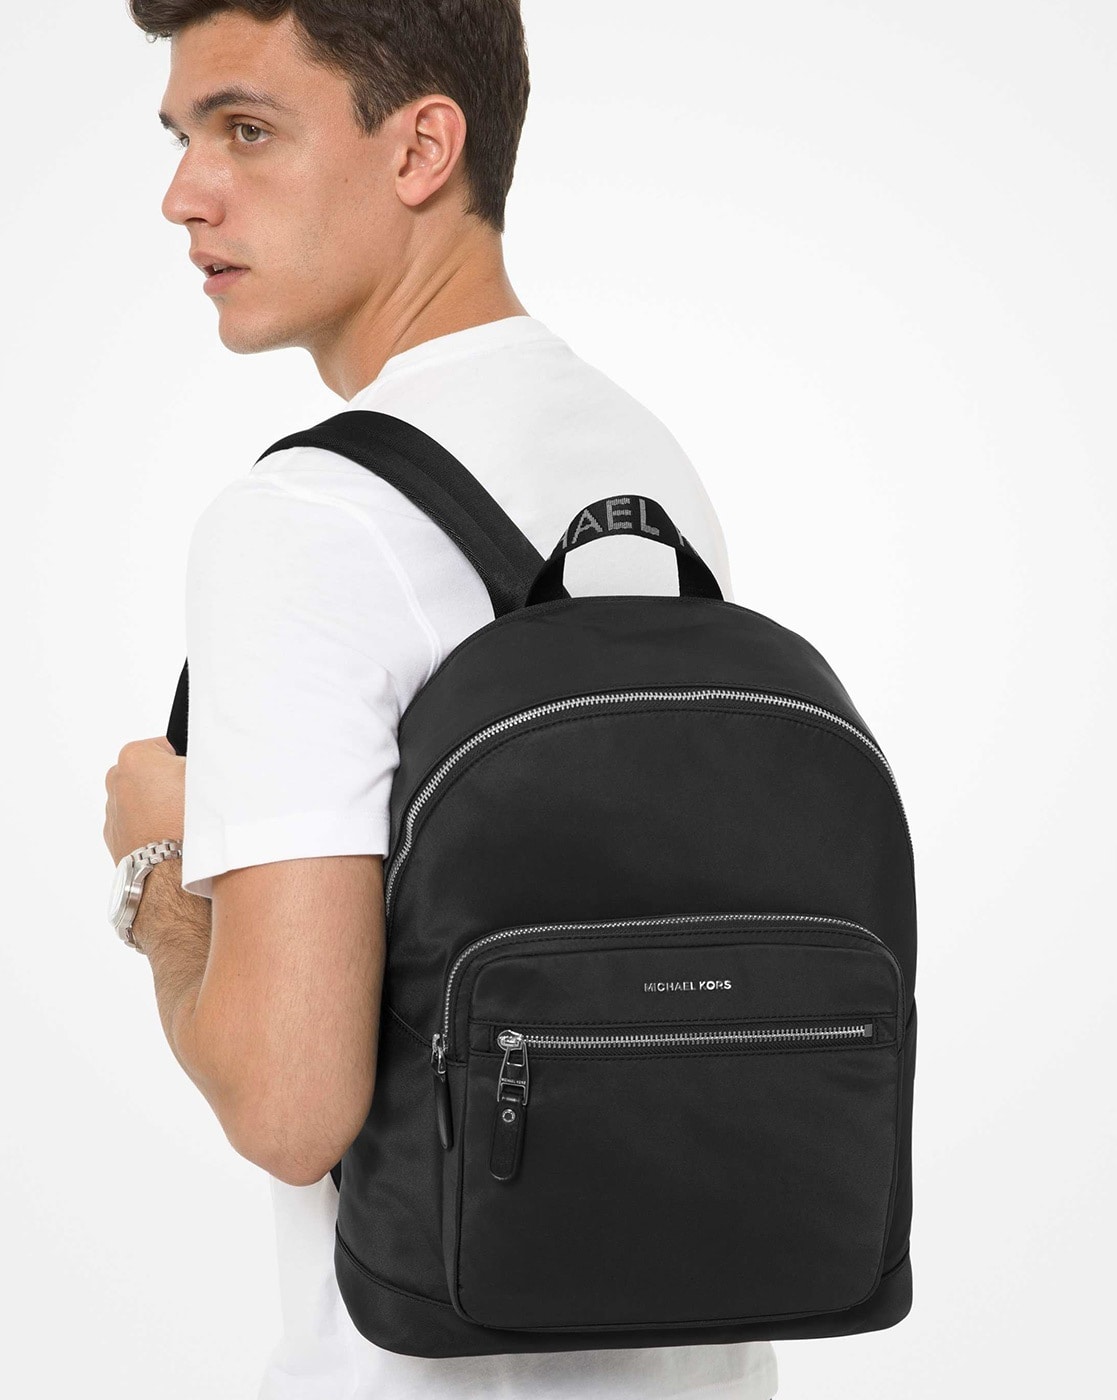 Buy Black Backpacks for Men by Michael Kors Online 